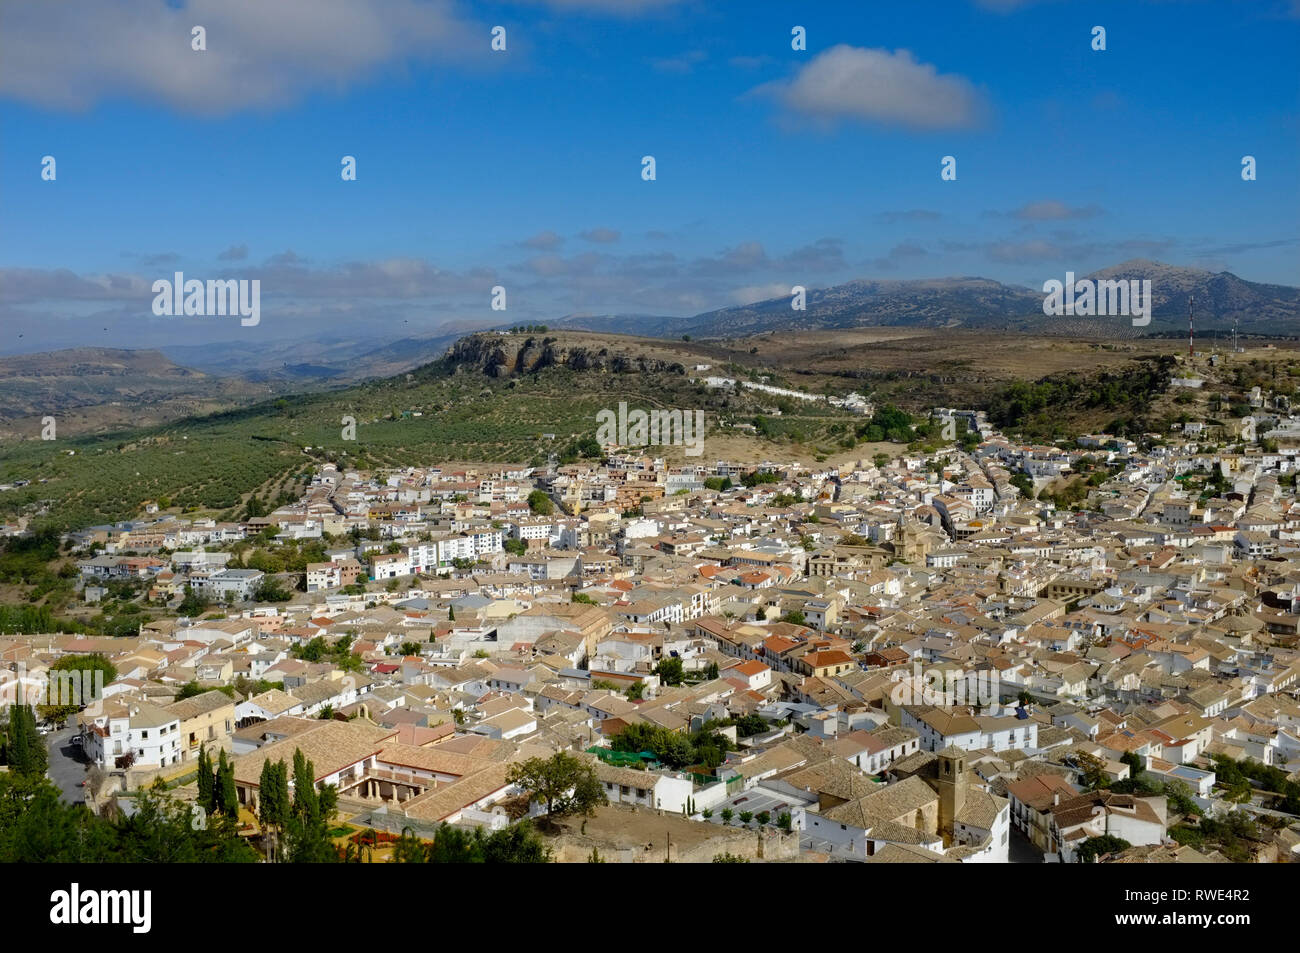 Vista de Alcalá la Real, provincia de Jaén, en Andalucía, España, tomada desde el castillo. Foto de stock